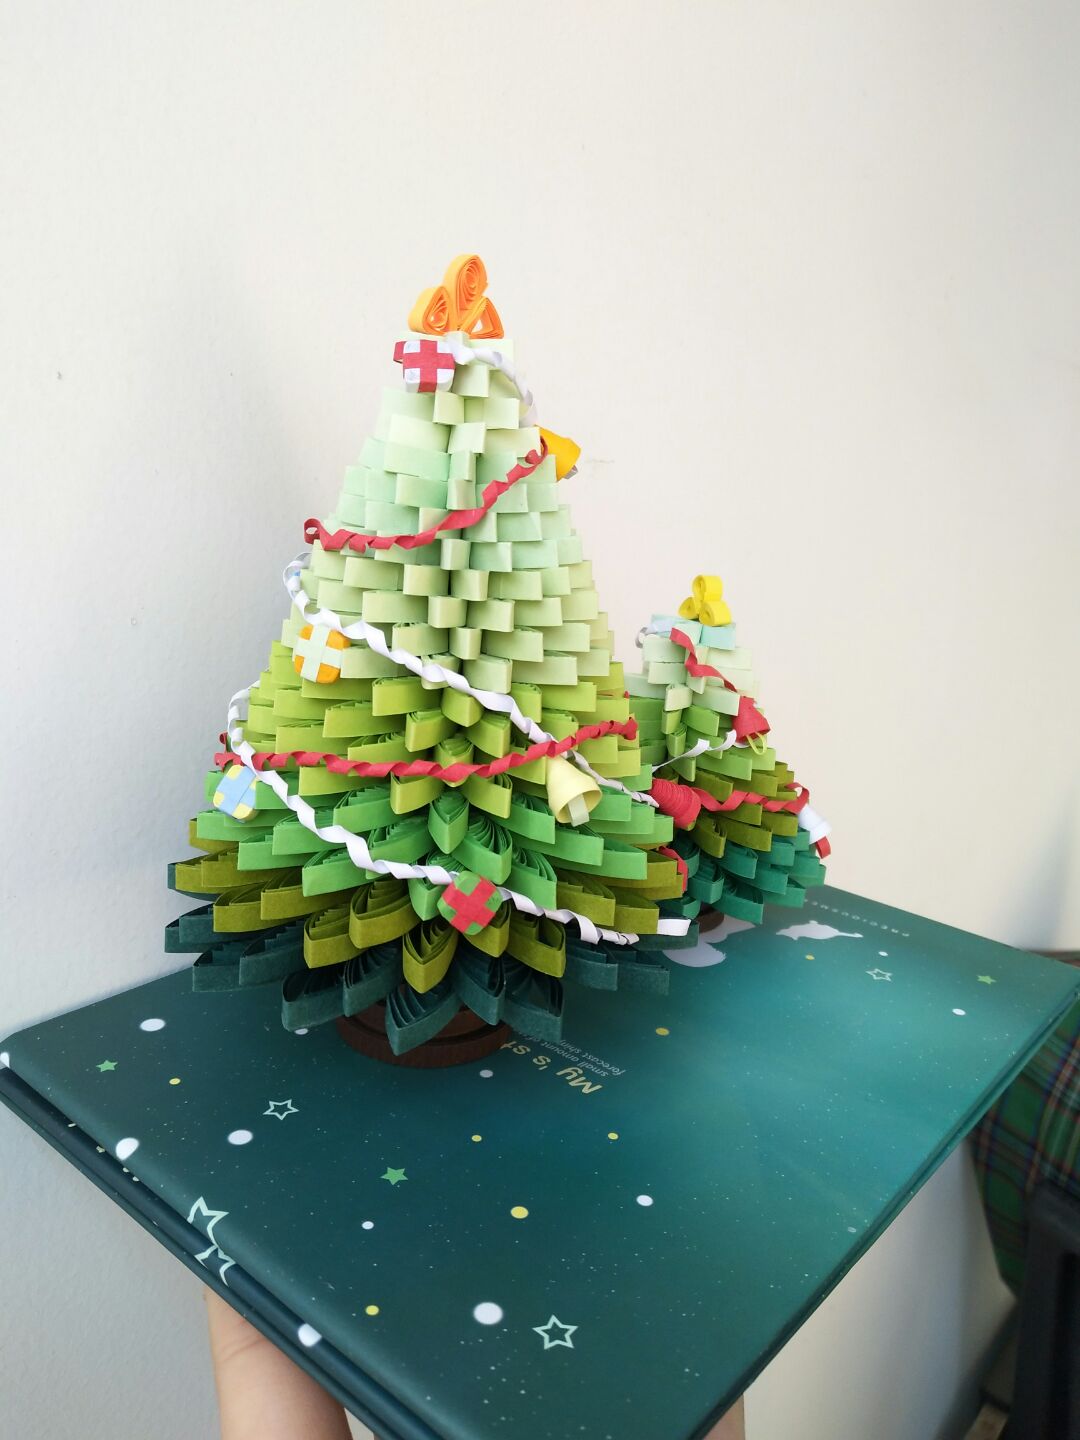 提前祝大家圣诞节快乐😁做一颗美美的圣诞树做礼物🎁